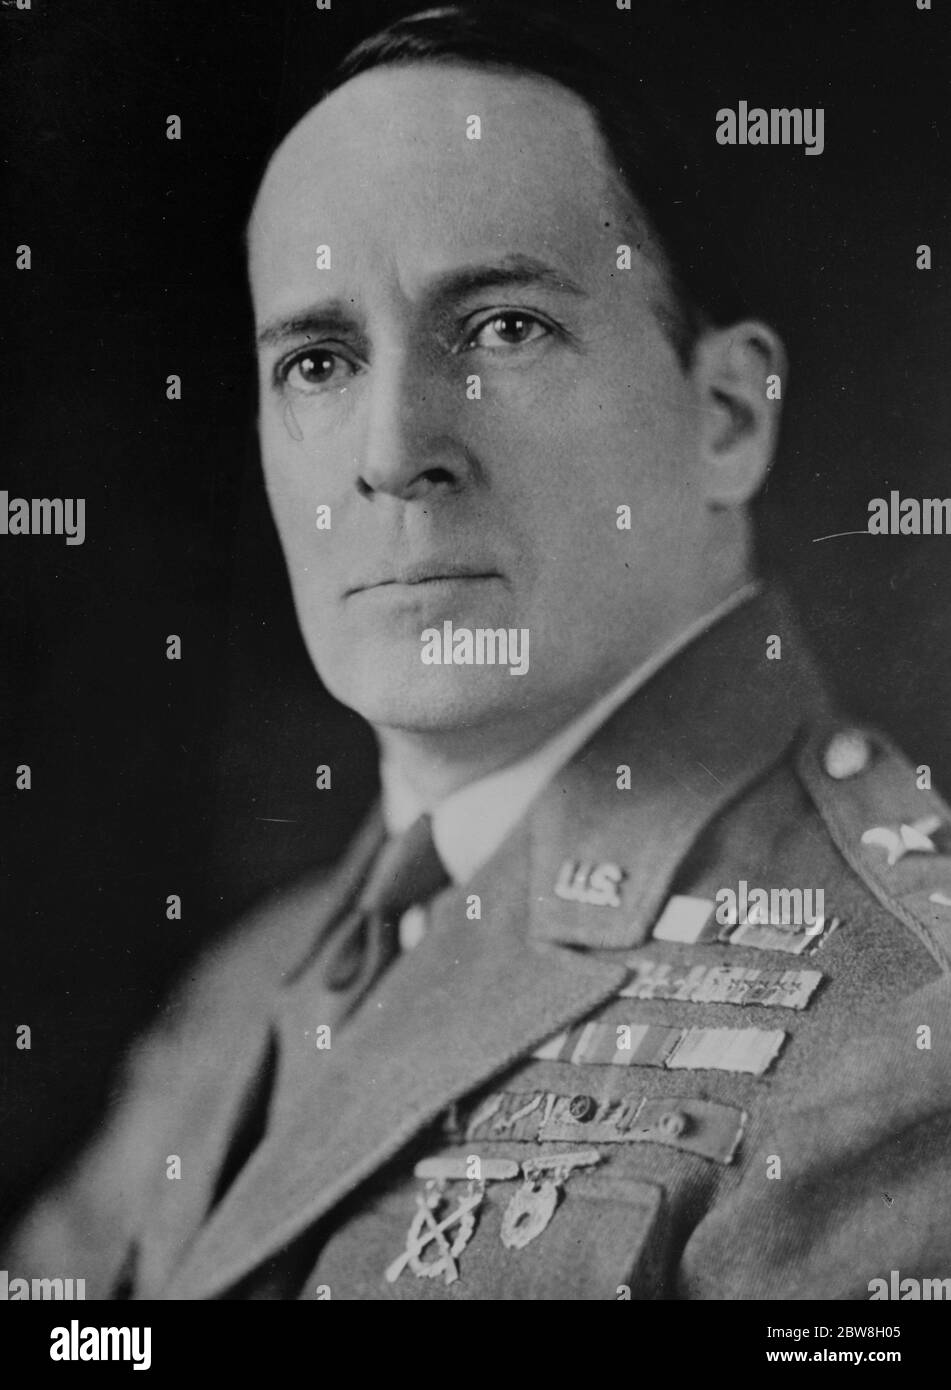 61,000,000 £ pour une armée américaine plus grande . Le général Douglas McArthur , qui recommande de fournir immédiatement un programme d'armes et d'équipements modernes par le Département de la guerre . 27 novembre 1933 Banque D'Images